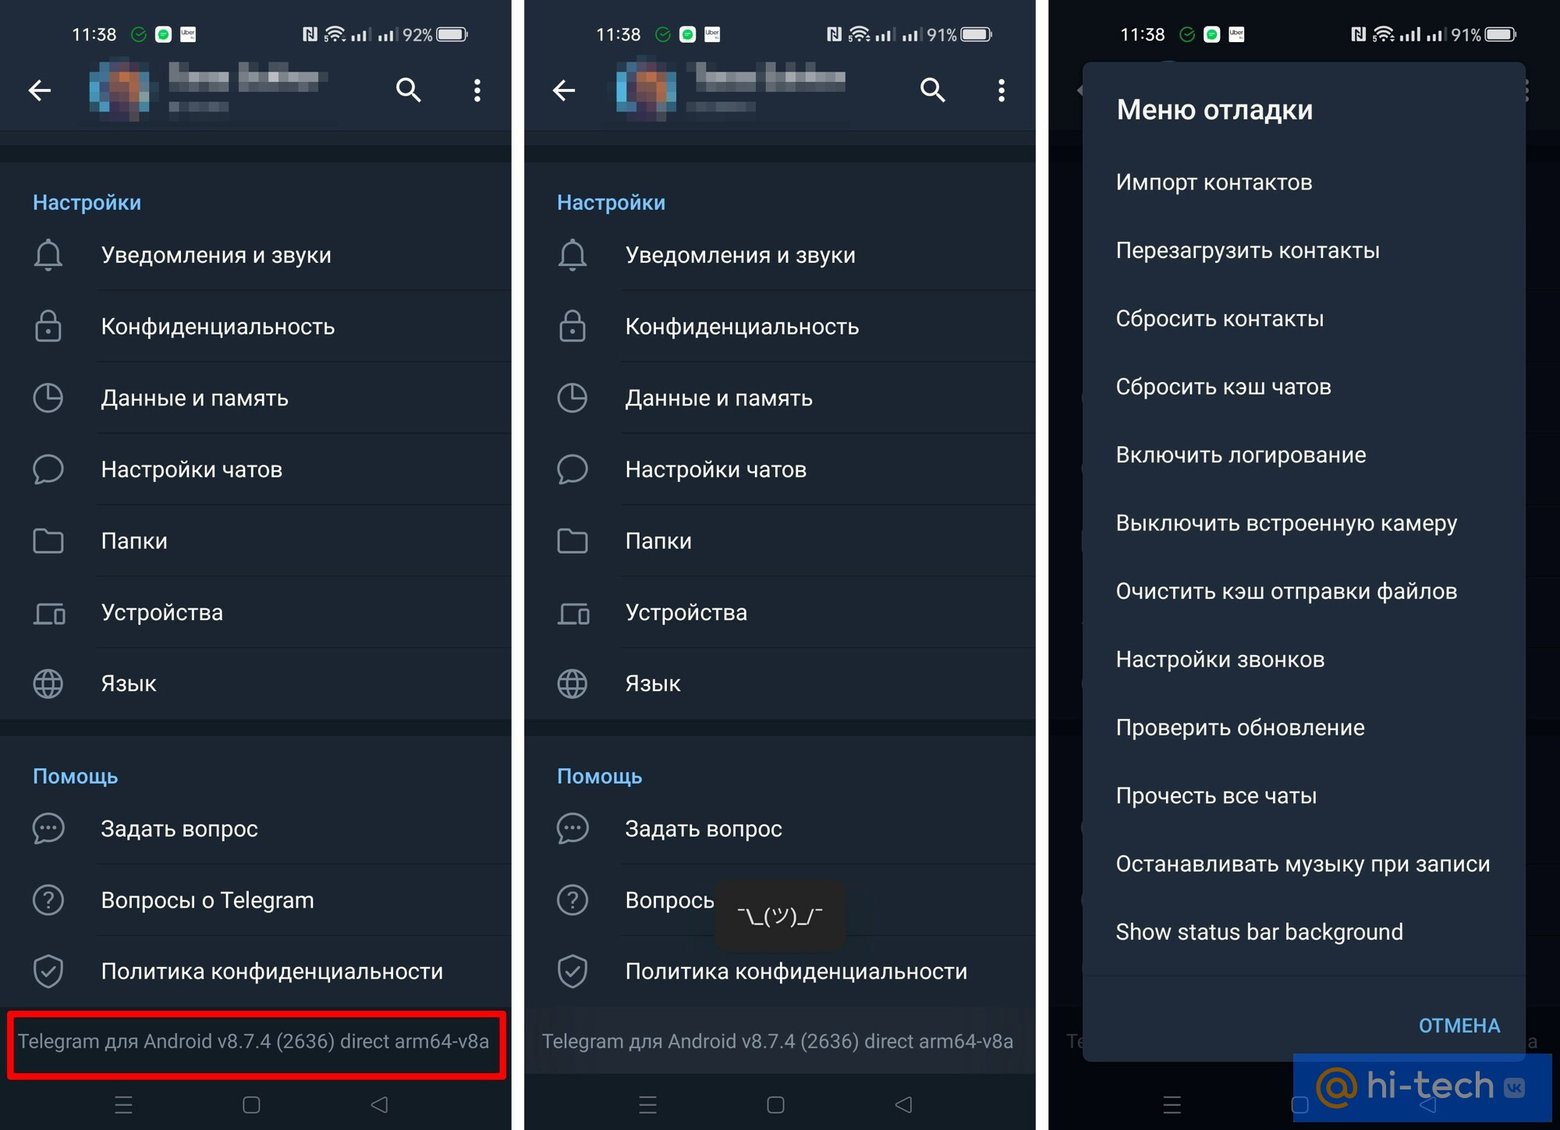 Телеграмм обновить на андроид до последней версии бесплатно русском языке фото 113